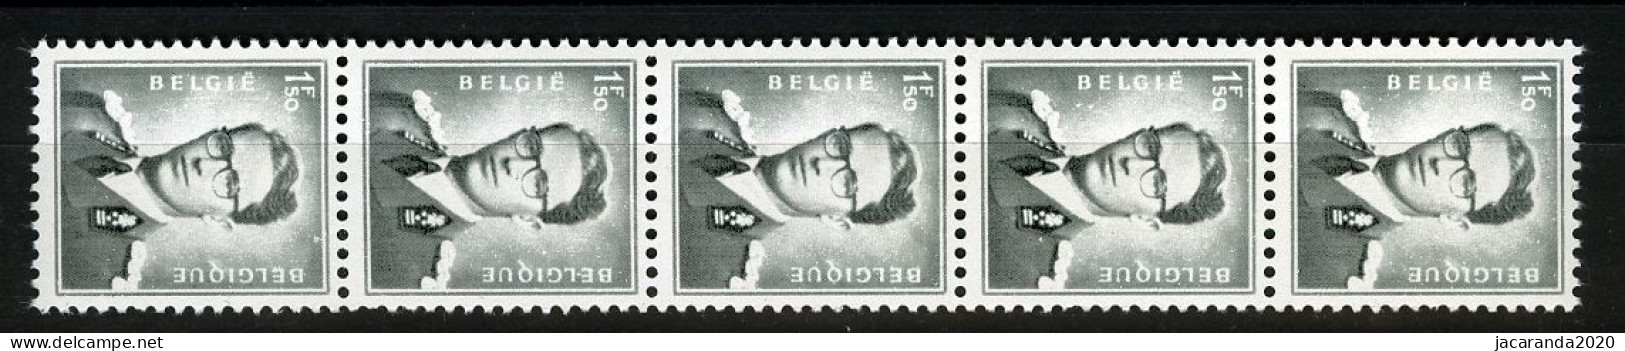 België R28 - Koning Boudewijn - 1,50 Zwartgrijs - Gris-noir - Strook Van 5 Met Nummer - Bande De 5 Avec Numéro - Coil Stamps